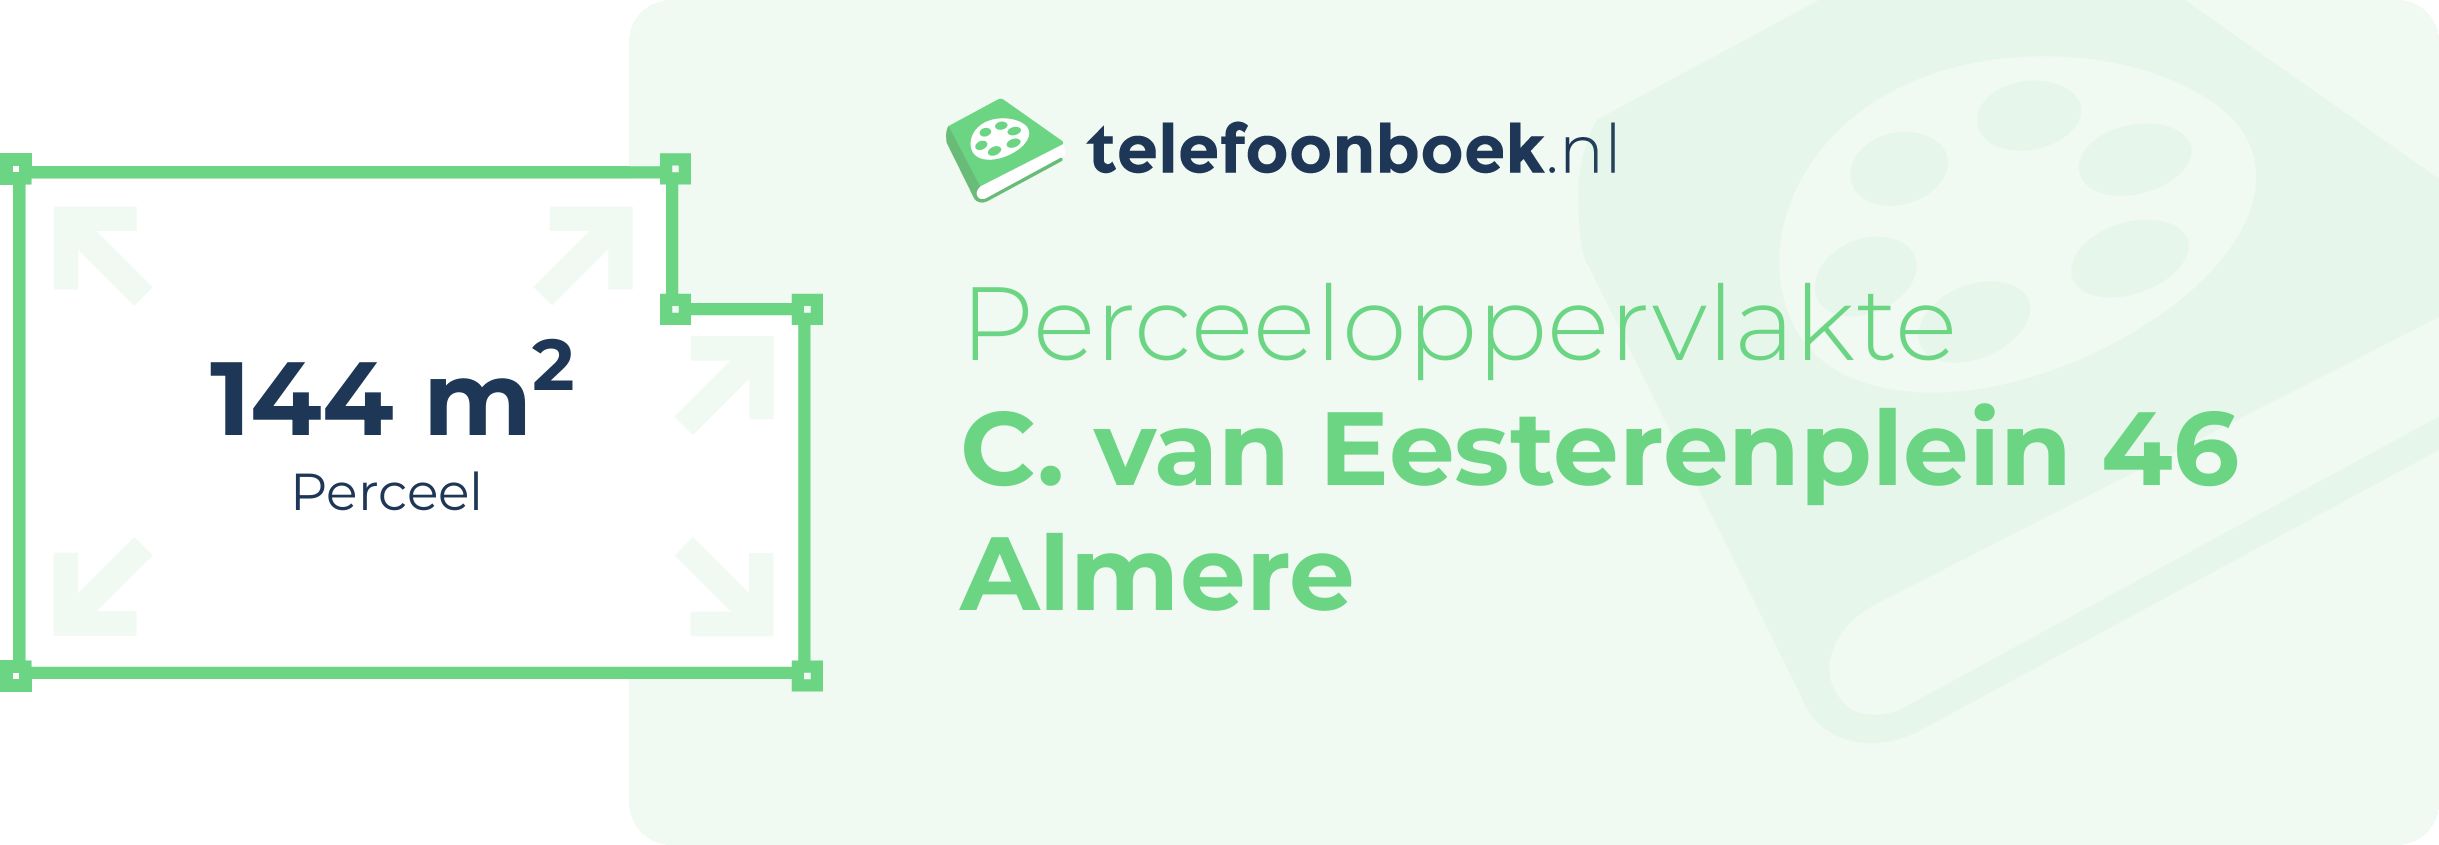 Perceeloppervlakte C. Van Eesterenplein 46 Almere